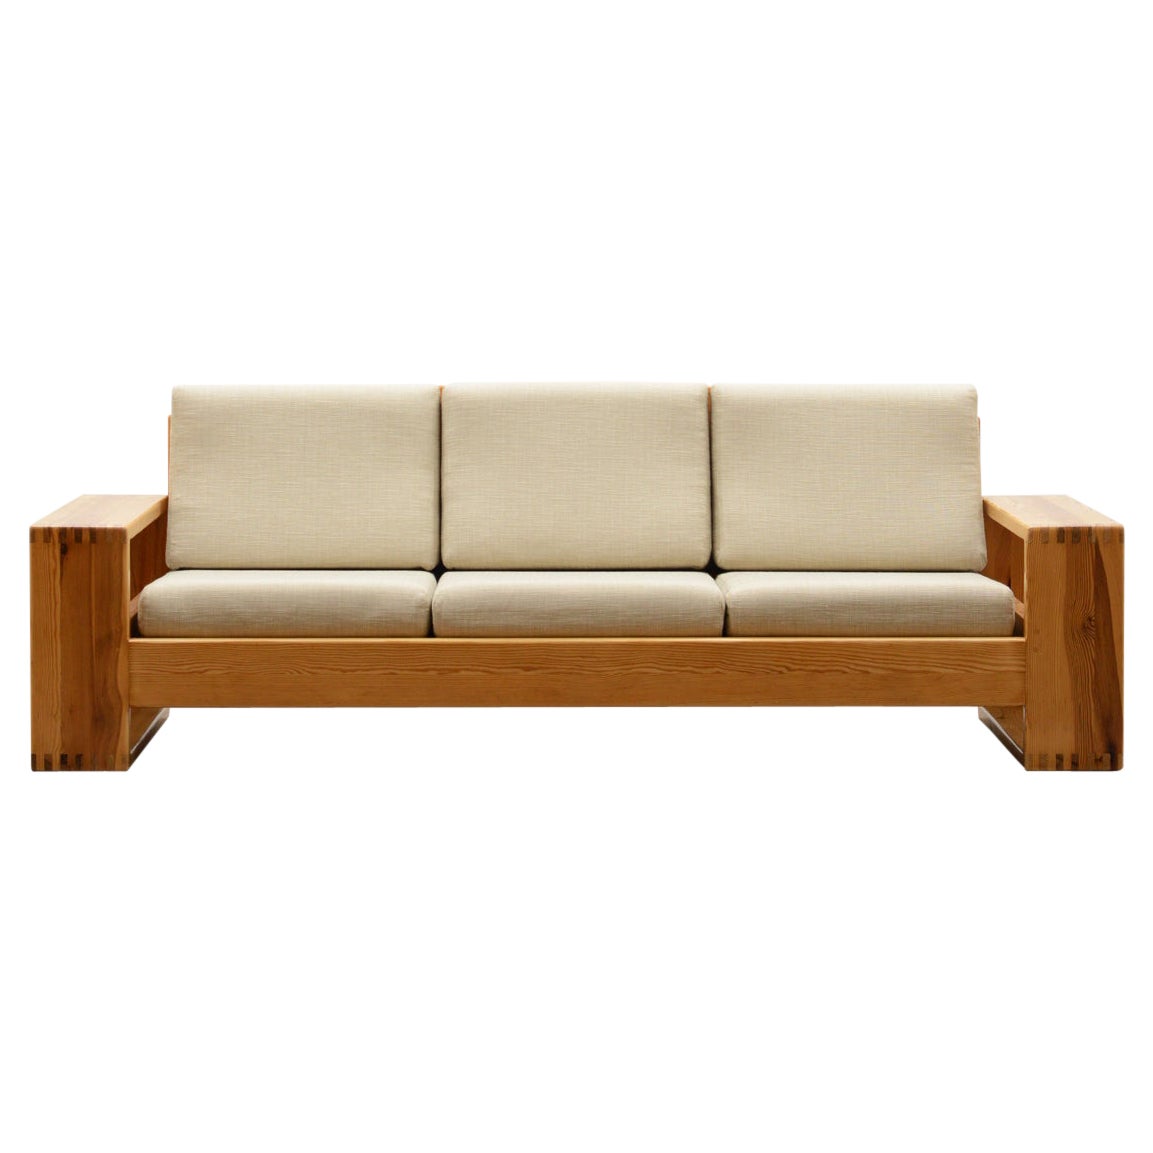 Rare Pine 3 Seater Sofa by Ate Van Apeldoorn for Houtwerk Hattem